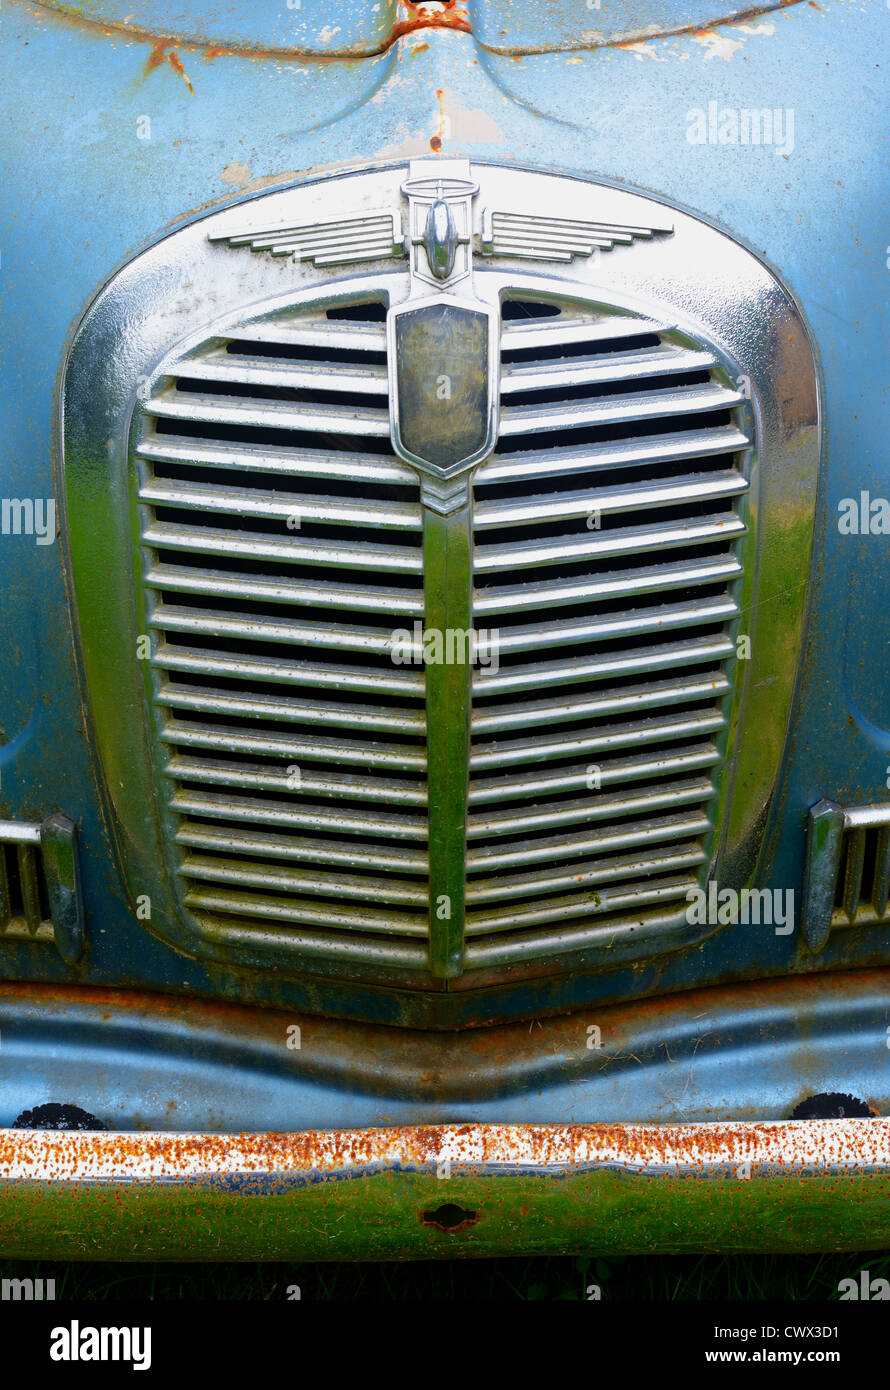 Foto von der vorderen Chrom Grill von einem alten antiken verblasste Farbe  ausländische Auto Stockfotografie - Alamy